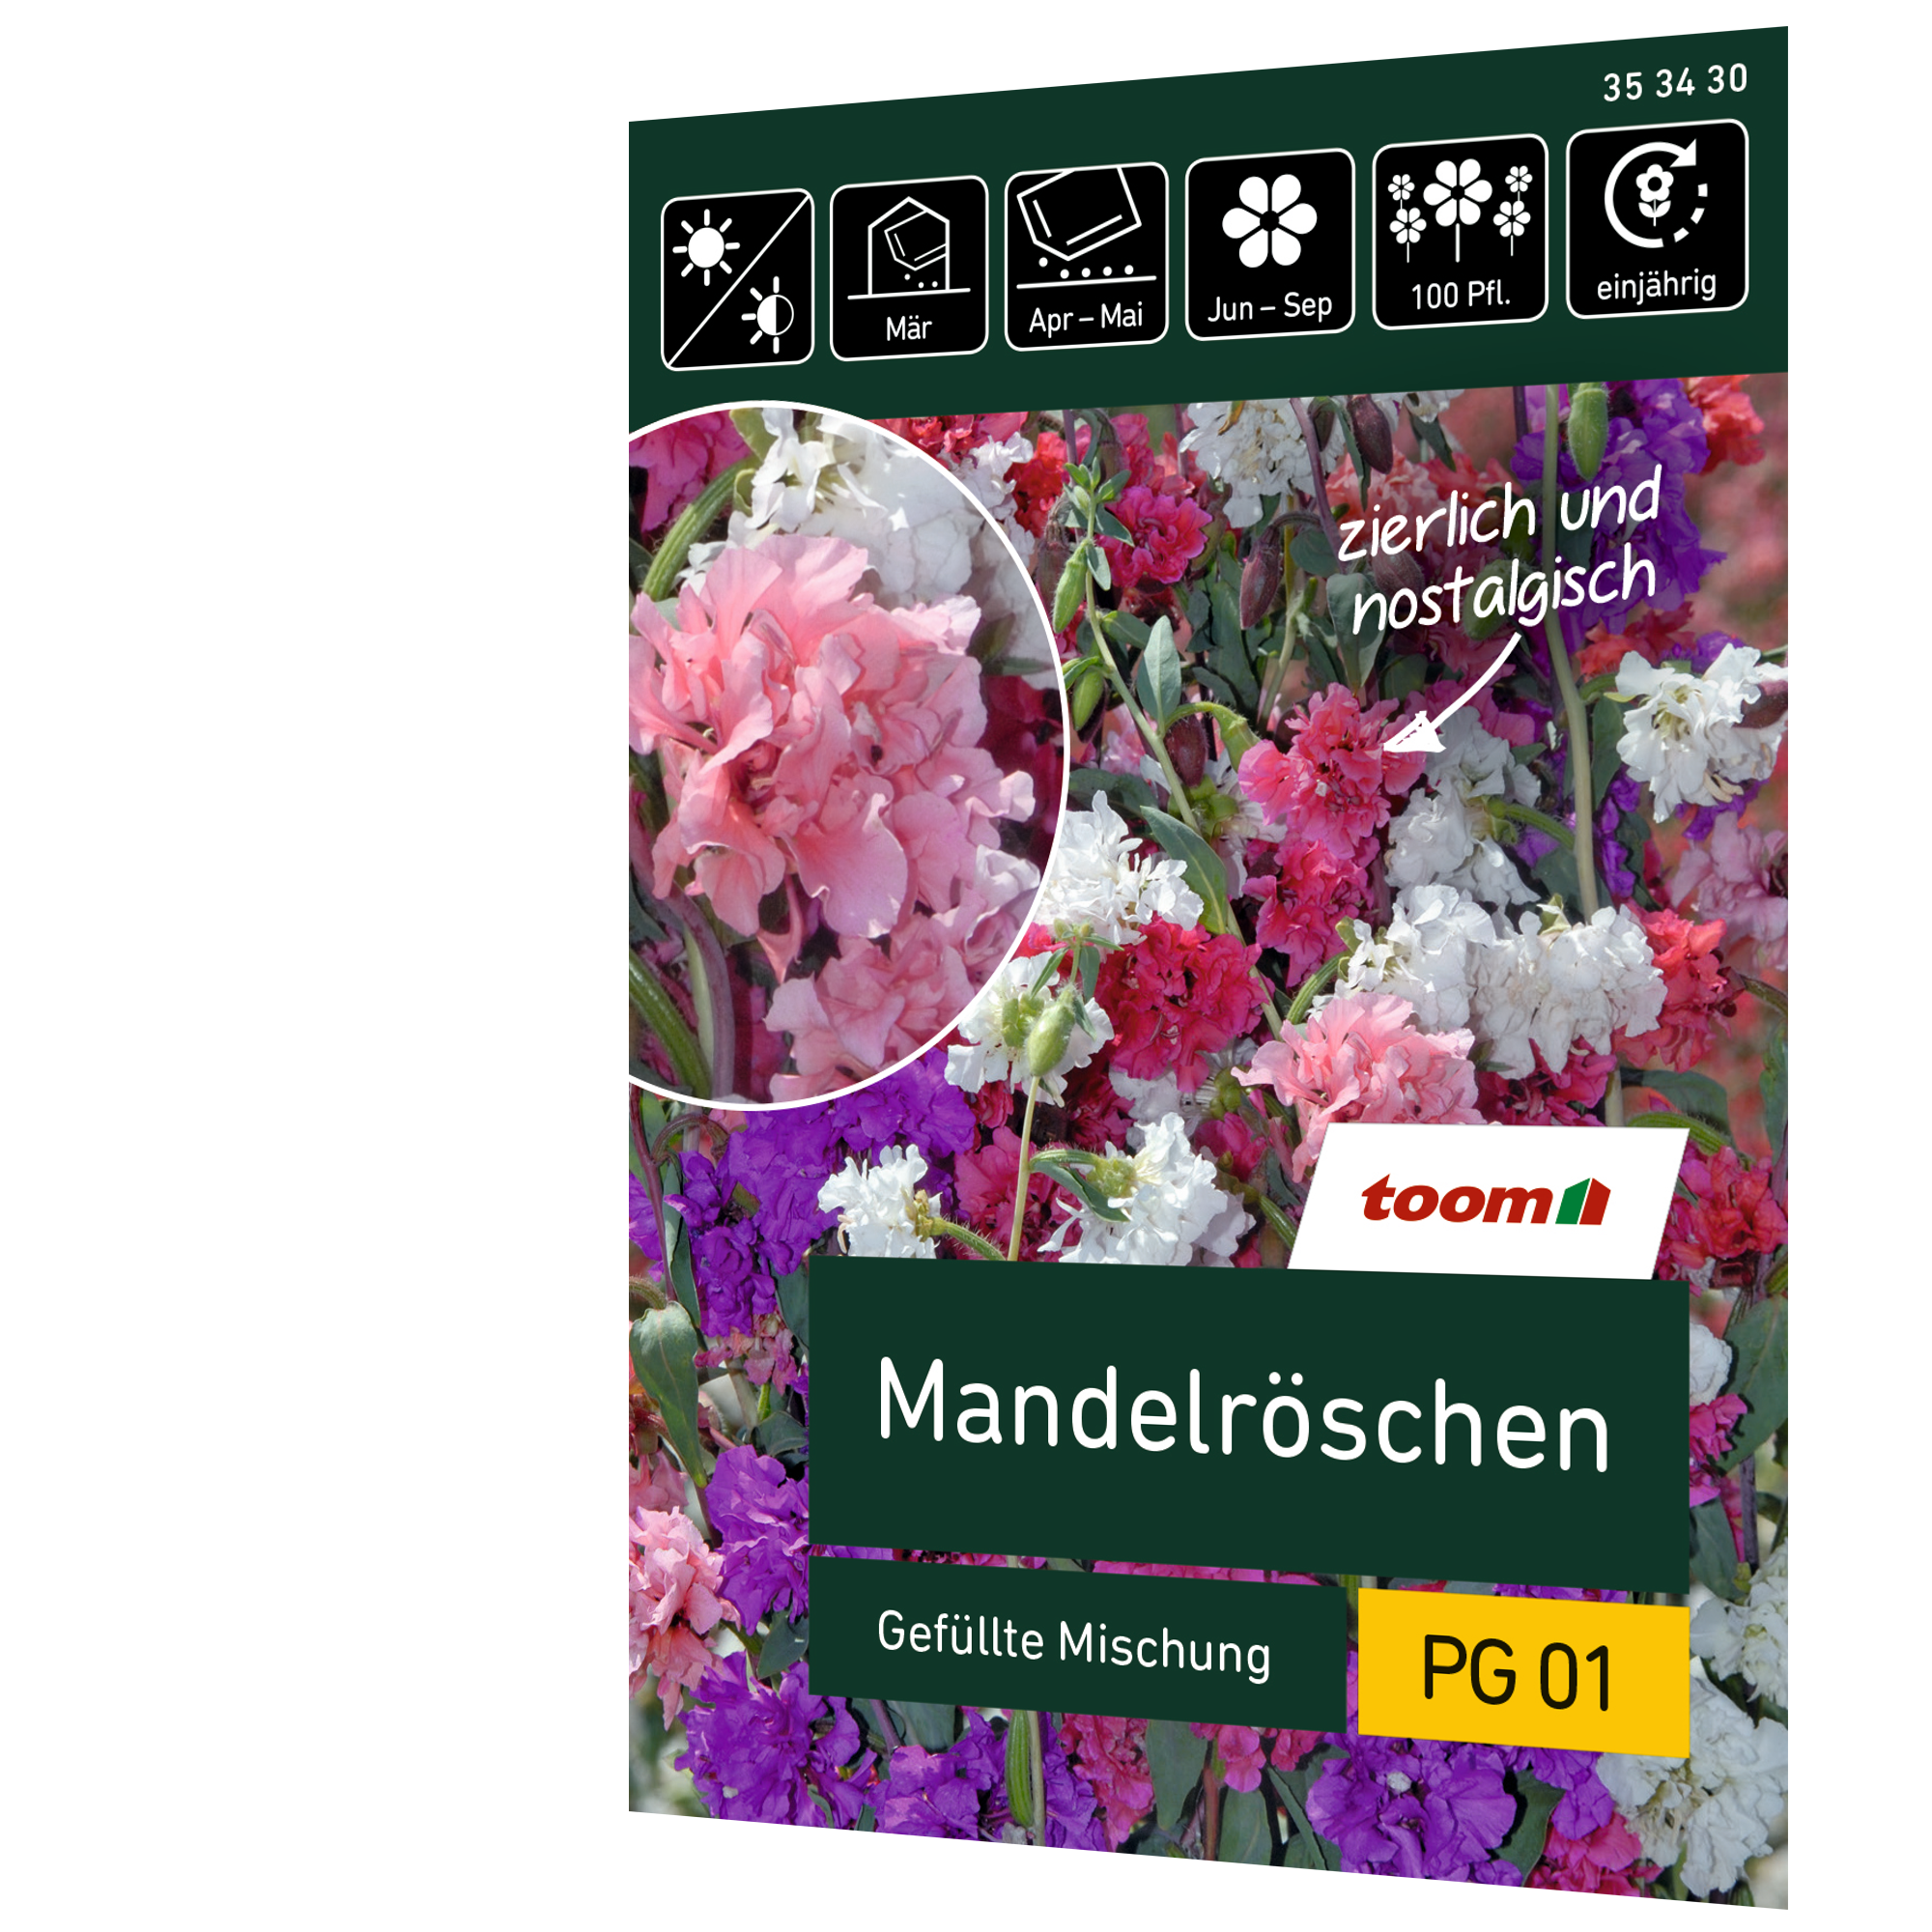 Mandelröschen 'Gefüllte Mischung' + product picture